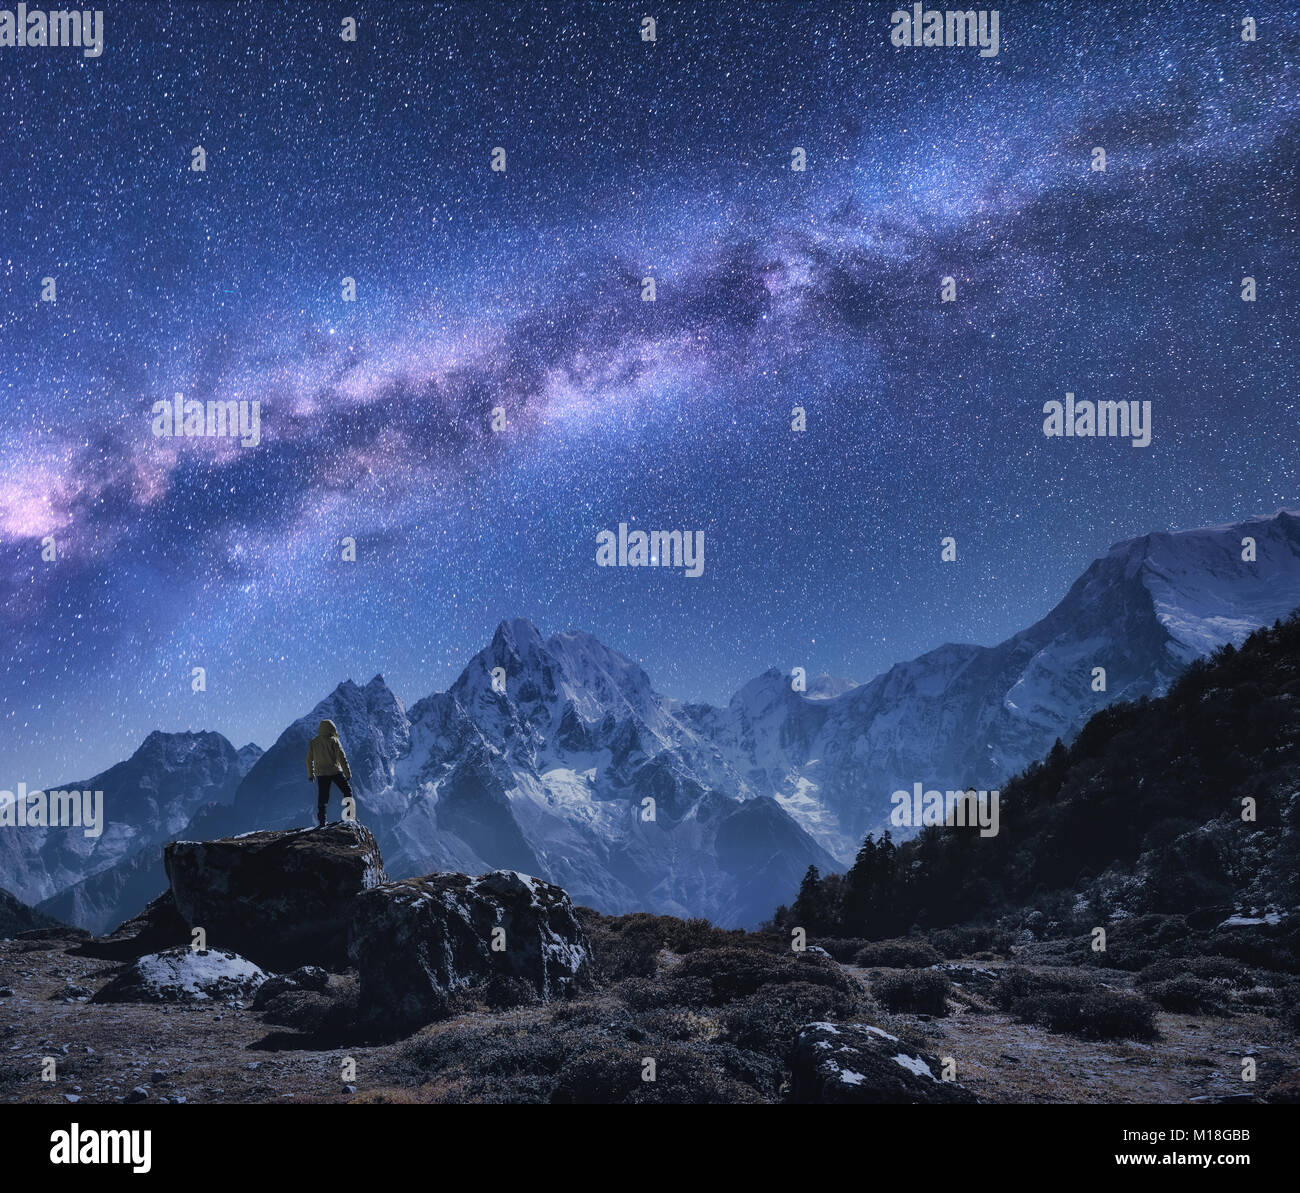 L'espace avec Voie lactée et les montagnes. Homme debout sur la pierre, montagnes et ciel étoilé de nuit au Népal. Roches avec des sommets enneigés contre ciel avec sta Banque D'Images